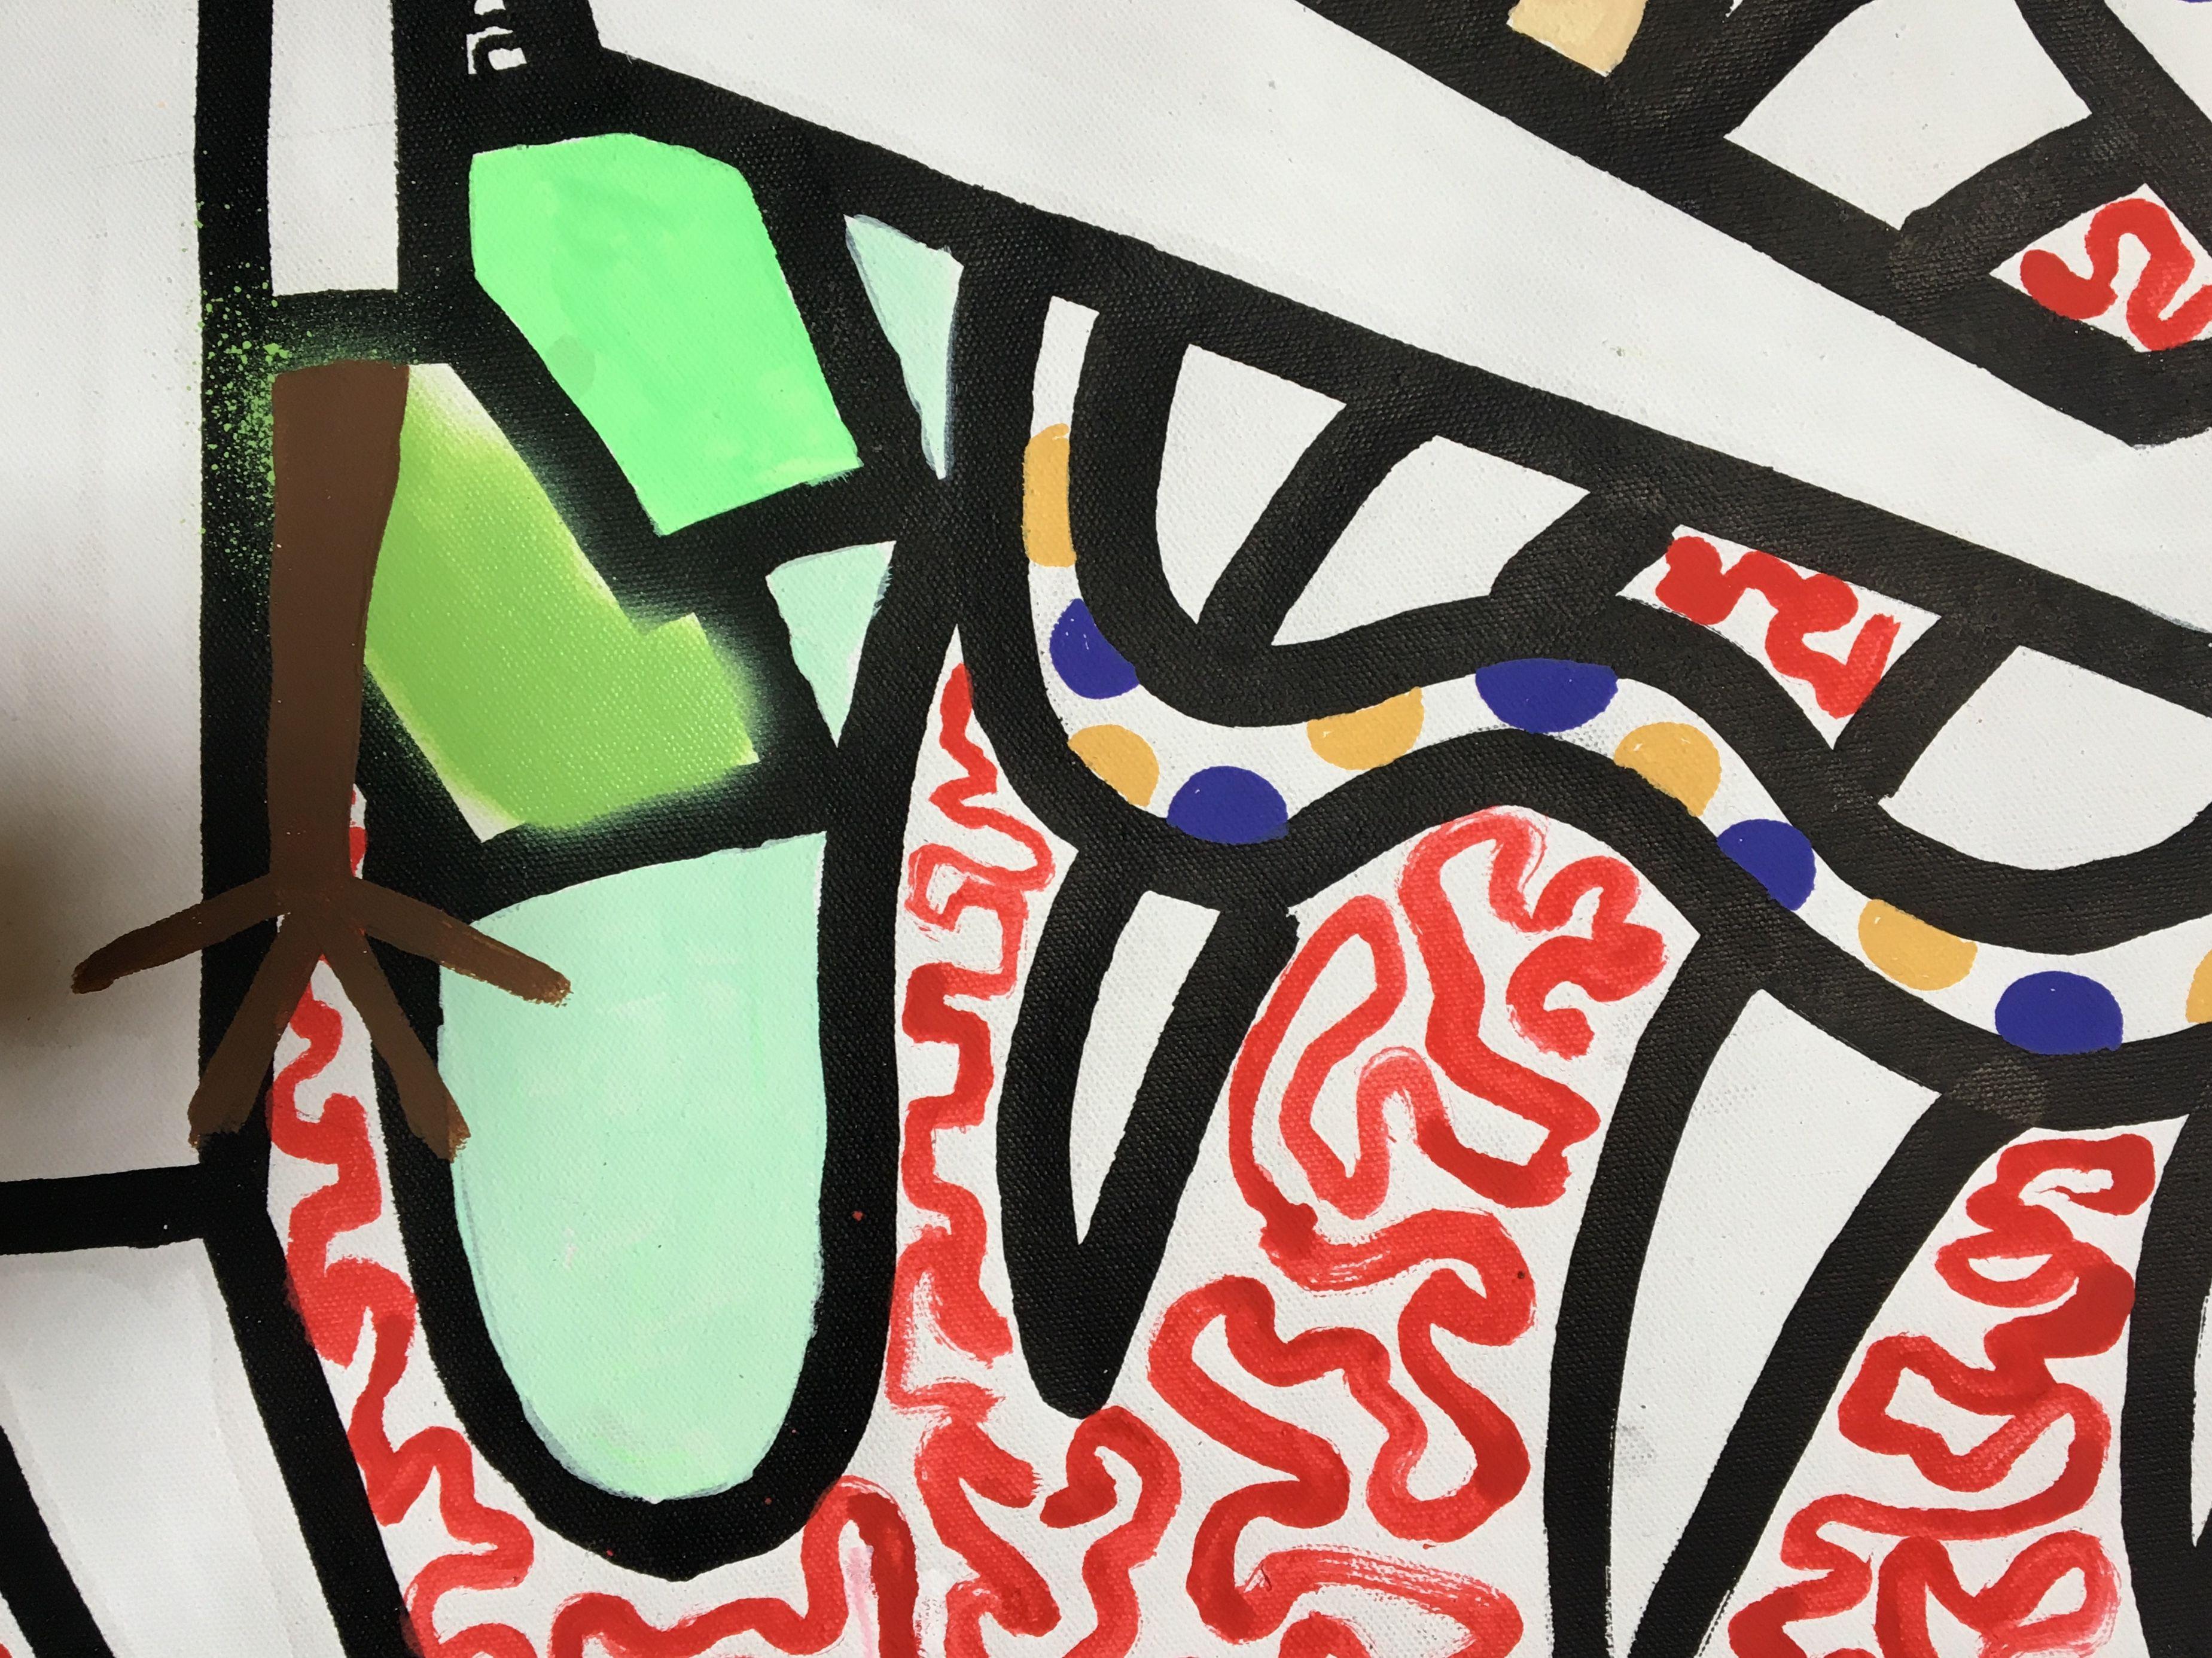 acrylmalerei auf der Leinwand, inspiriert von afrikanischen und zeitgenössischen Kunstrichtungen. CANVAS 153 zeigt einige afrikanisch anmutende Figuren auf einem Hintergrund, der stark von Harings Kunstwerken inspiriert ist. Hintergrund mit